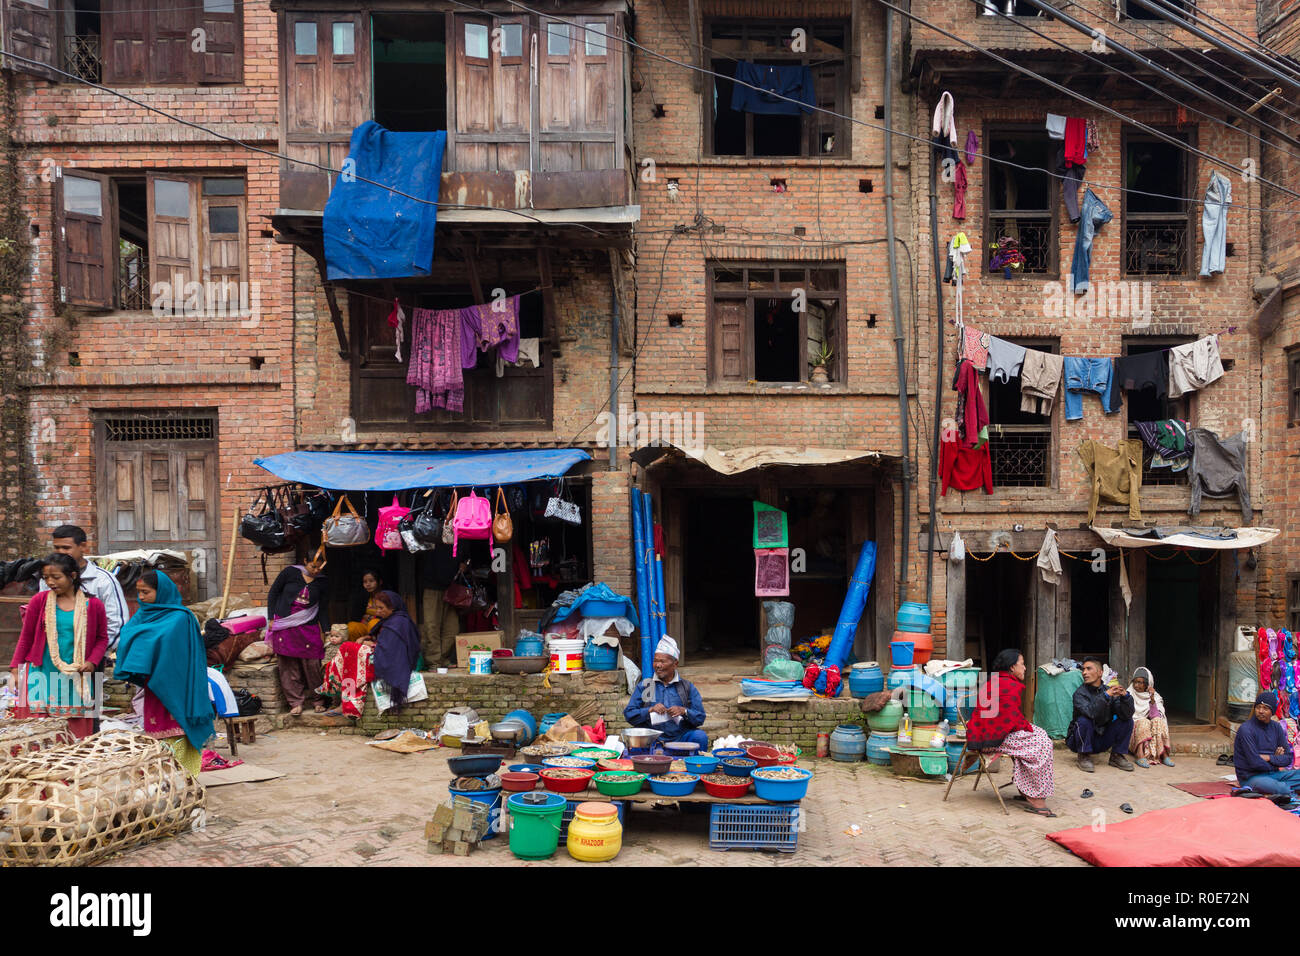 BHAKTAPUR, Nepal, November 25, 2010: Blick auf einen kleinen Marktplatz mit Kleidung und Essen Verkäufer vor einem traditionellen alten Gebäude in Bhaktapur Stockfoto